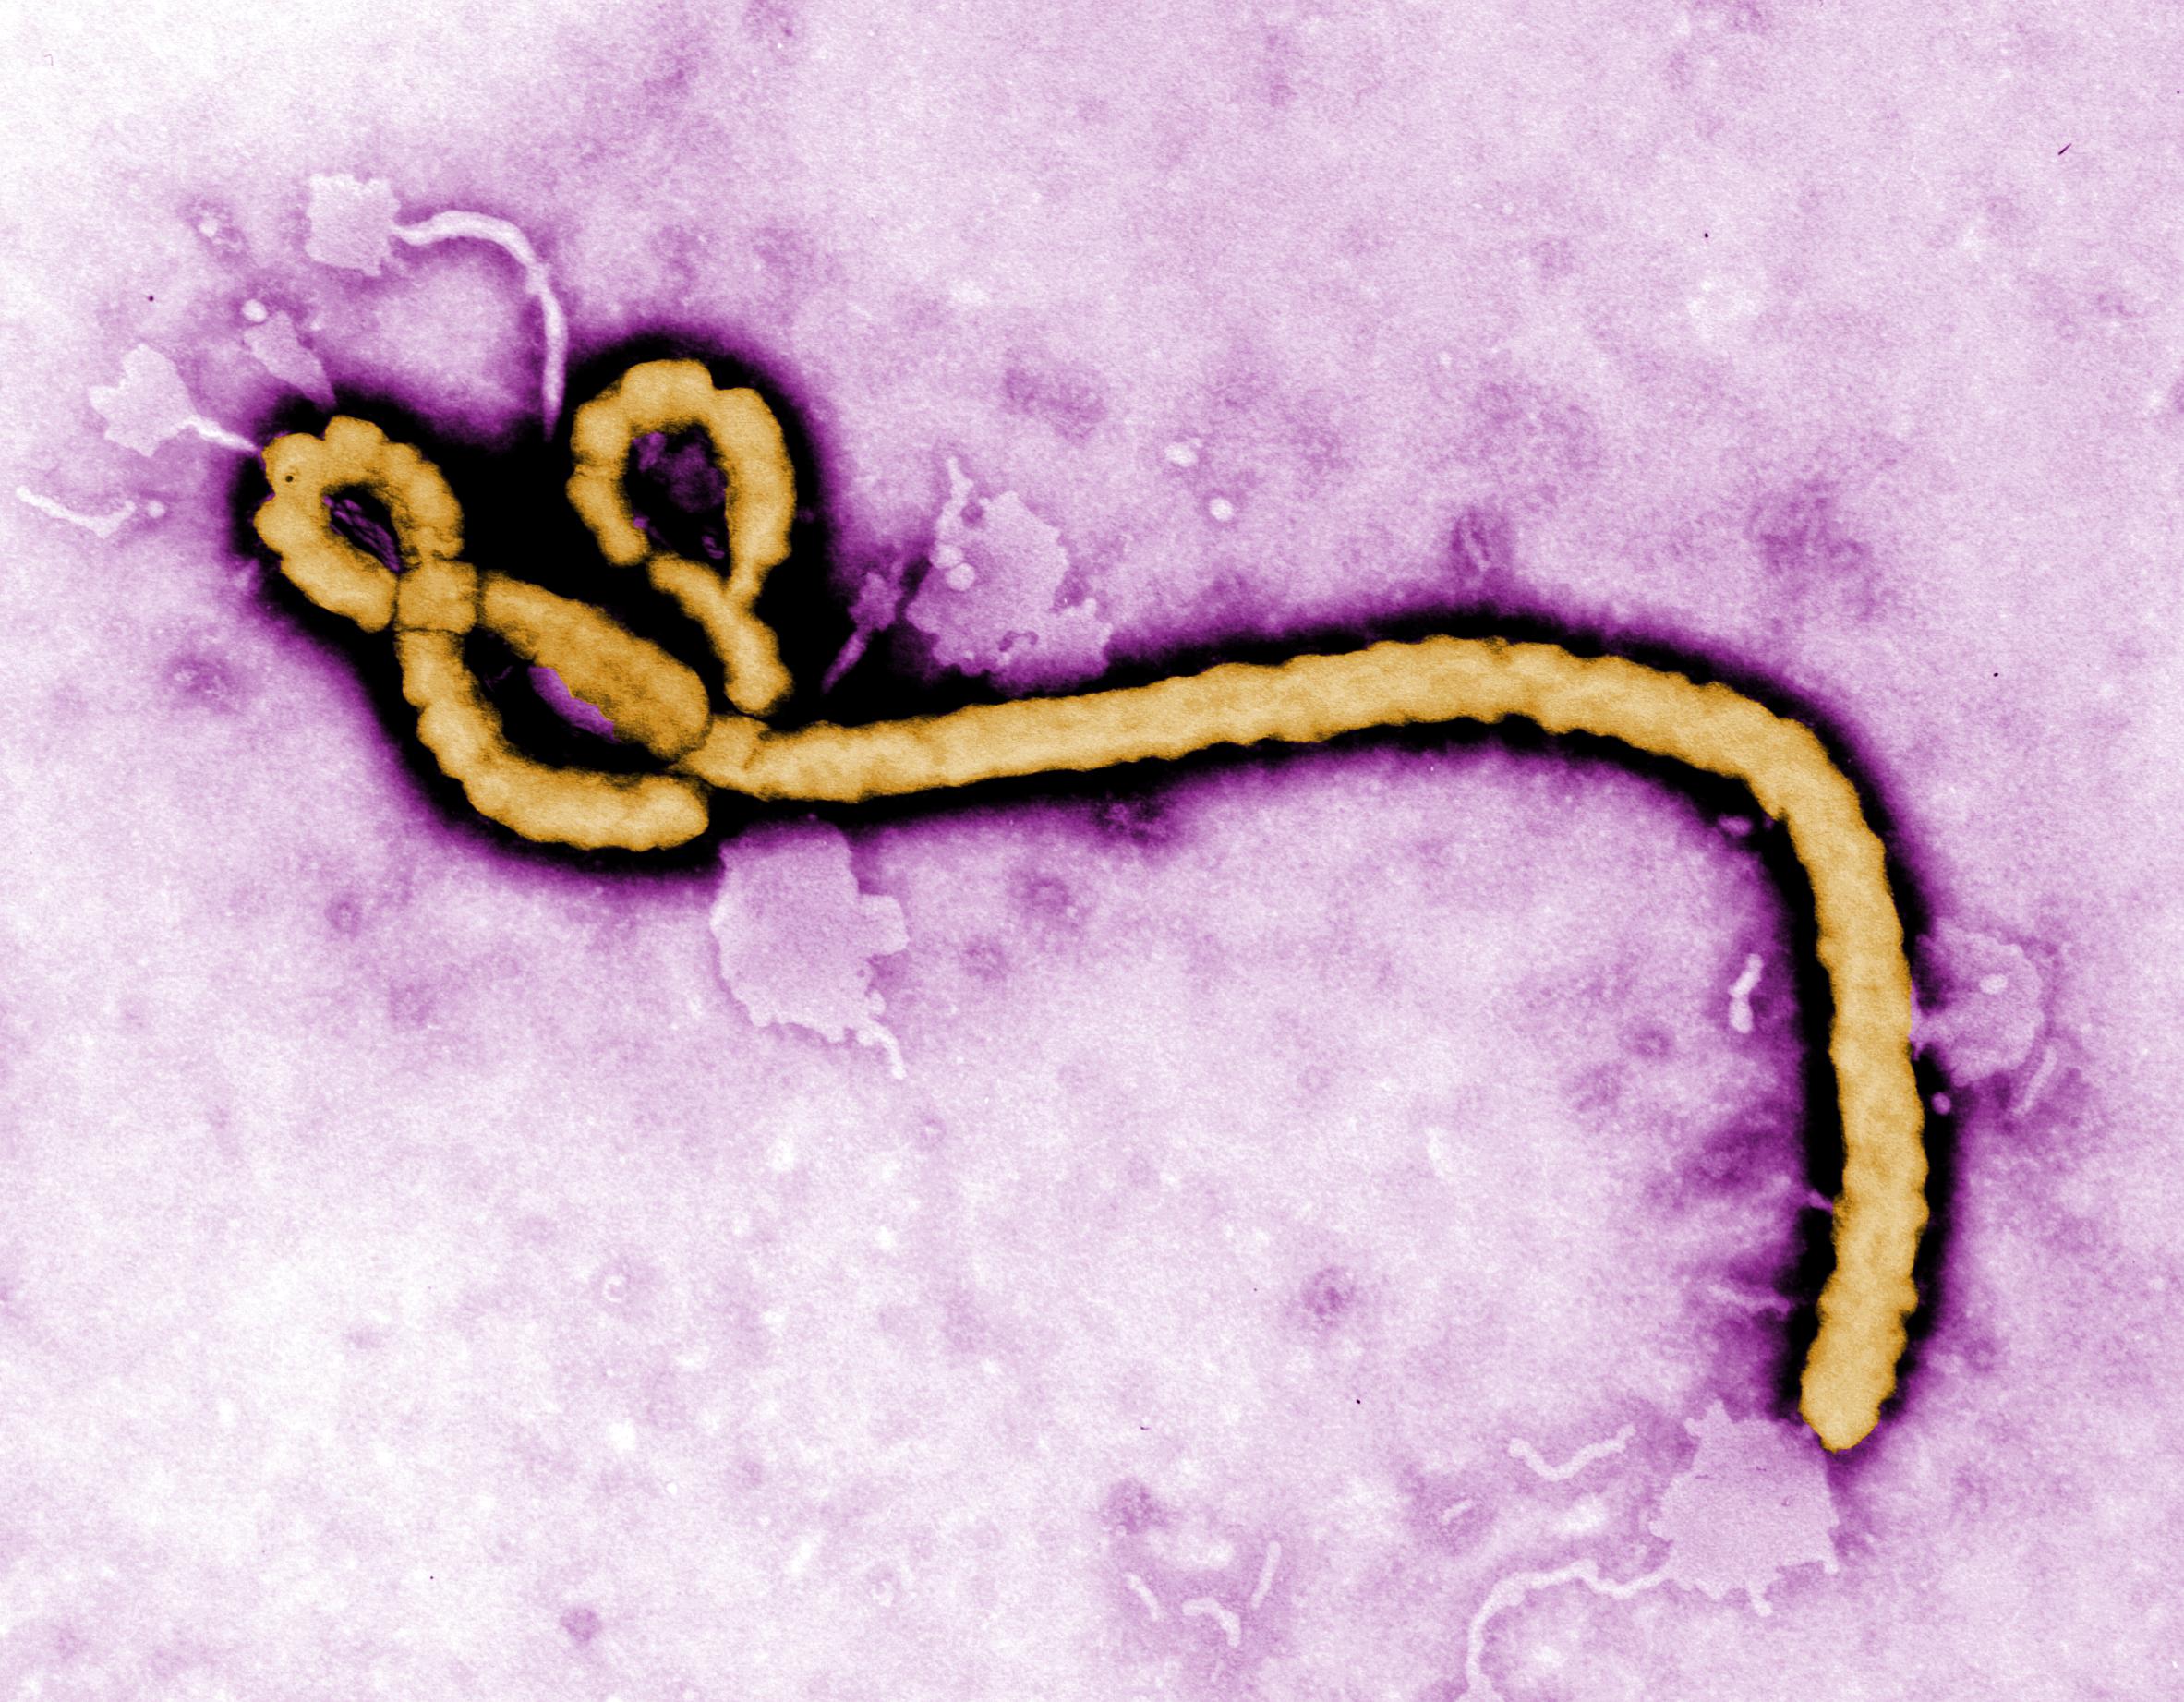 © Cellule souche du Virus Ebola observé au microscope électronique 